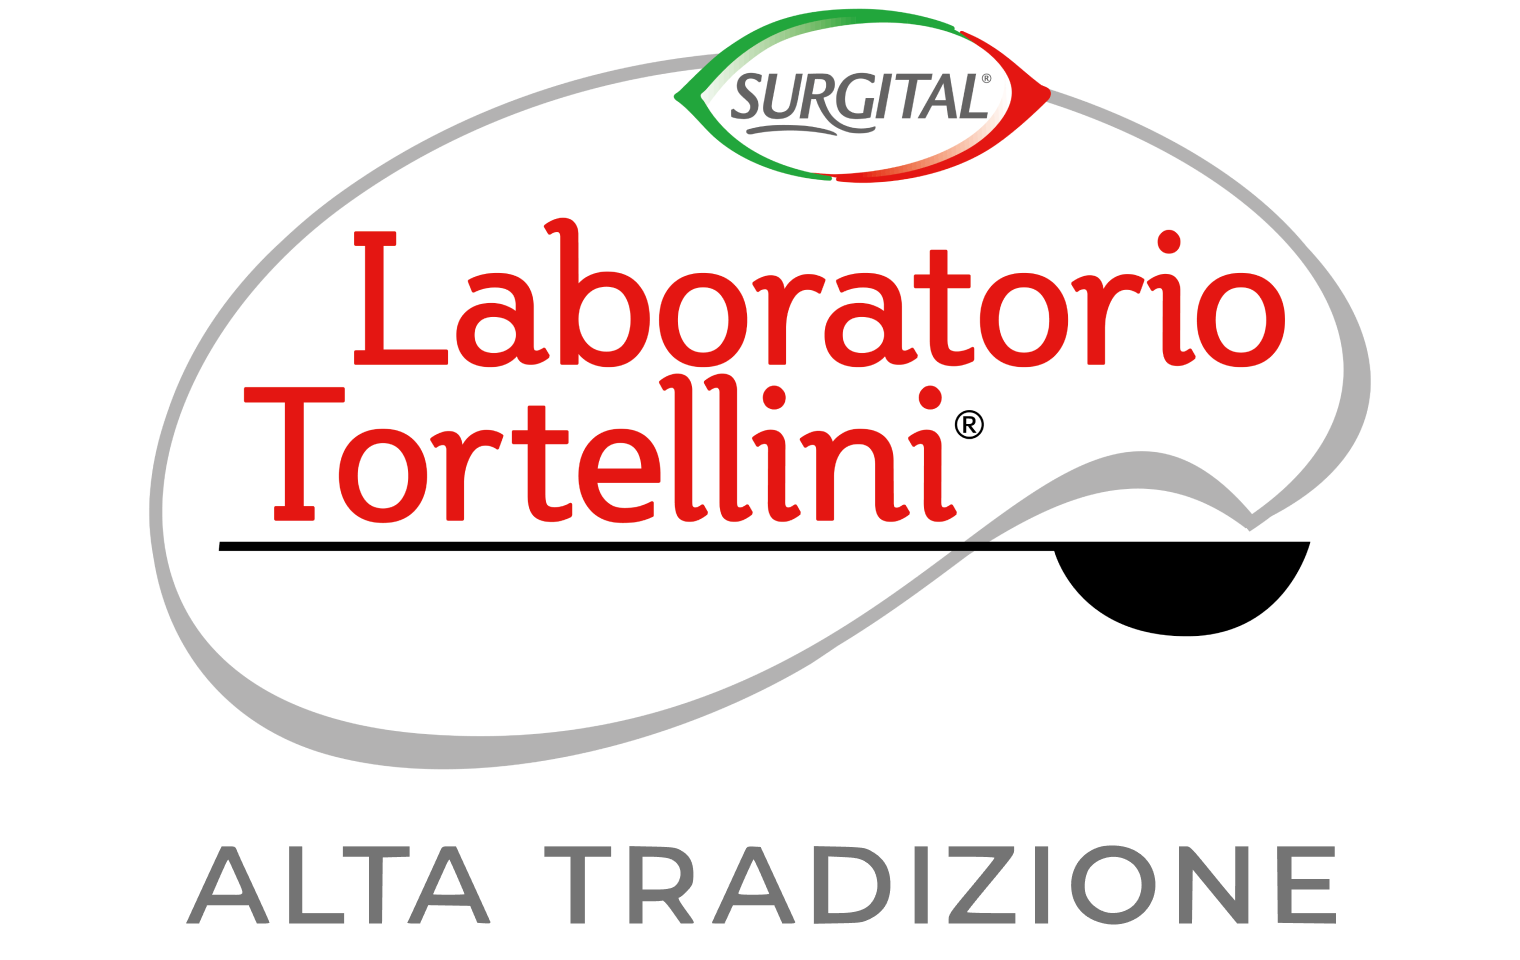 Laboratorio Tortellini logo